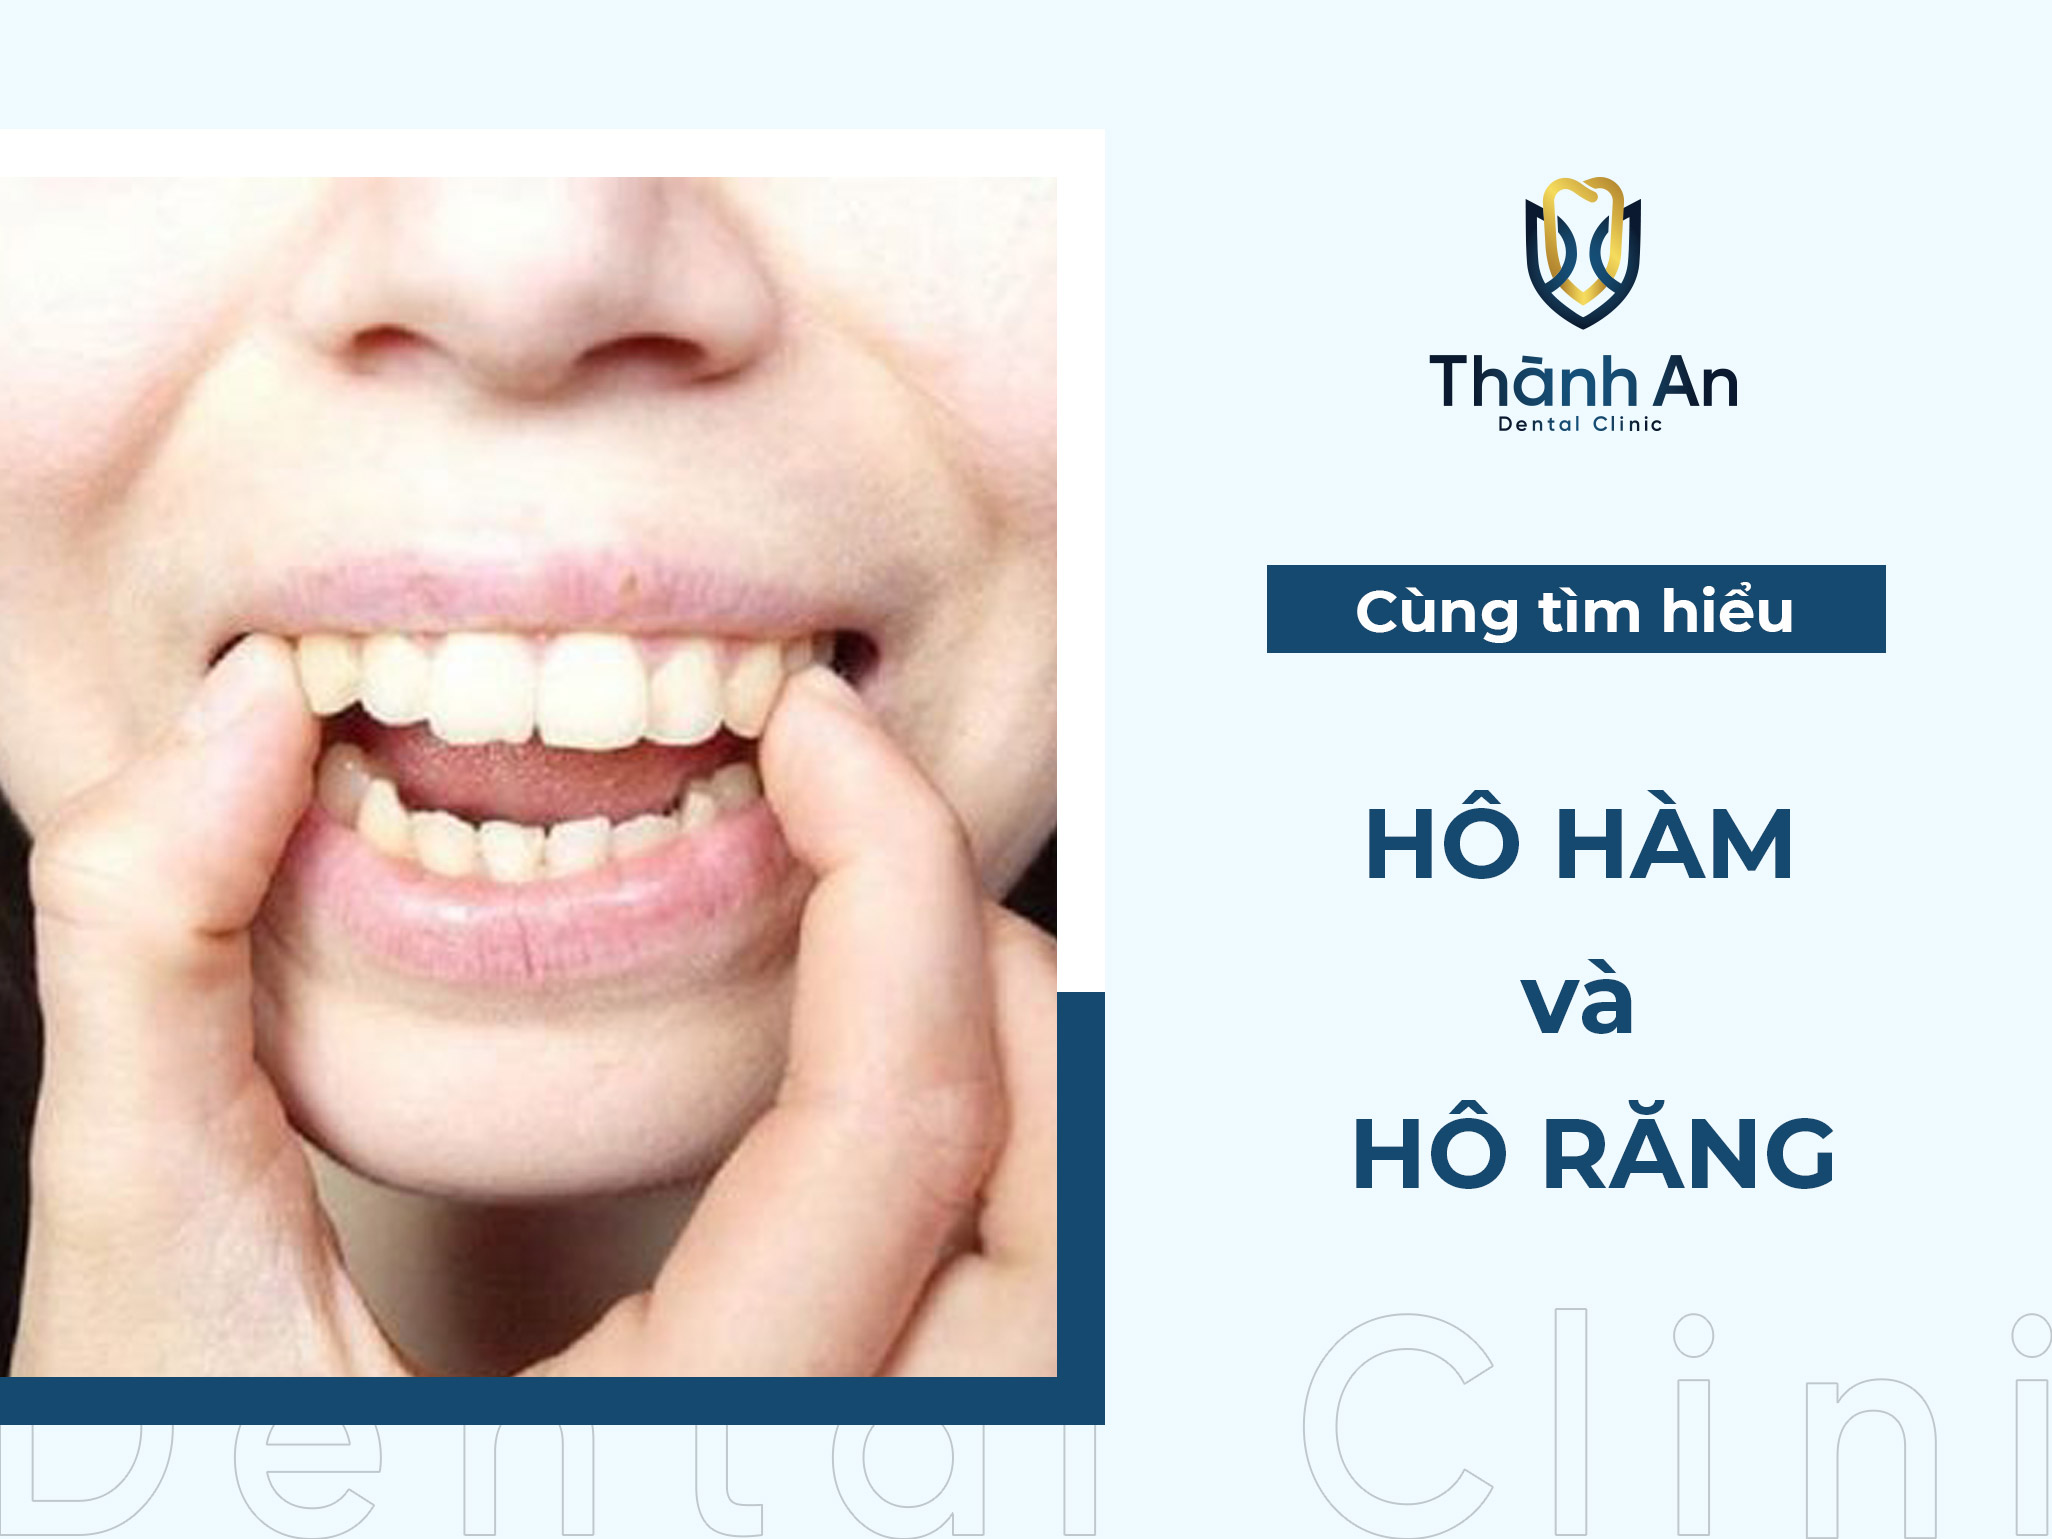 Hô hàm và hô răng: Cách nhận biết và điều trị phù hợp theo tình trạng hô